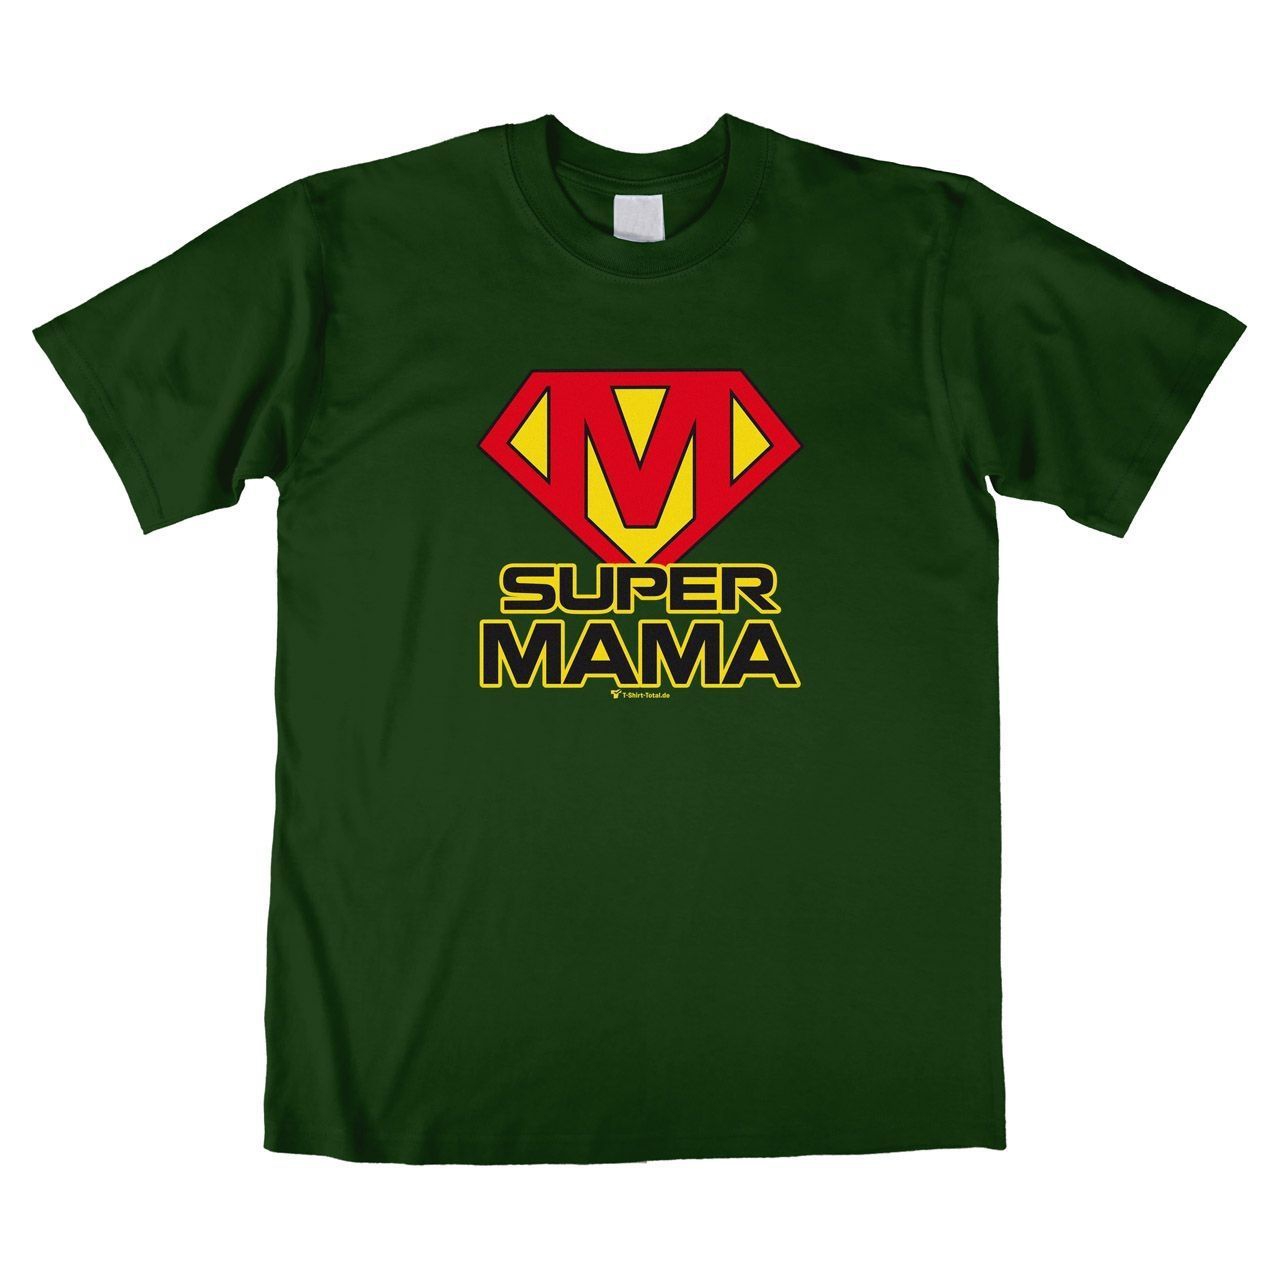 Super Mama Unisex T-Shirt dunkelgrün Small